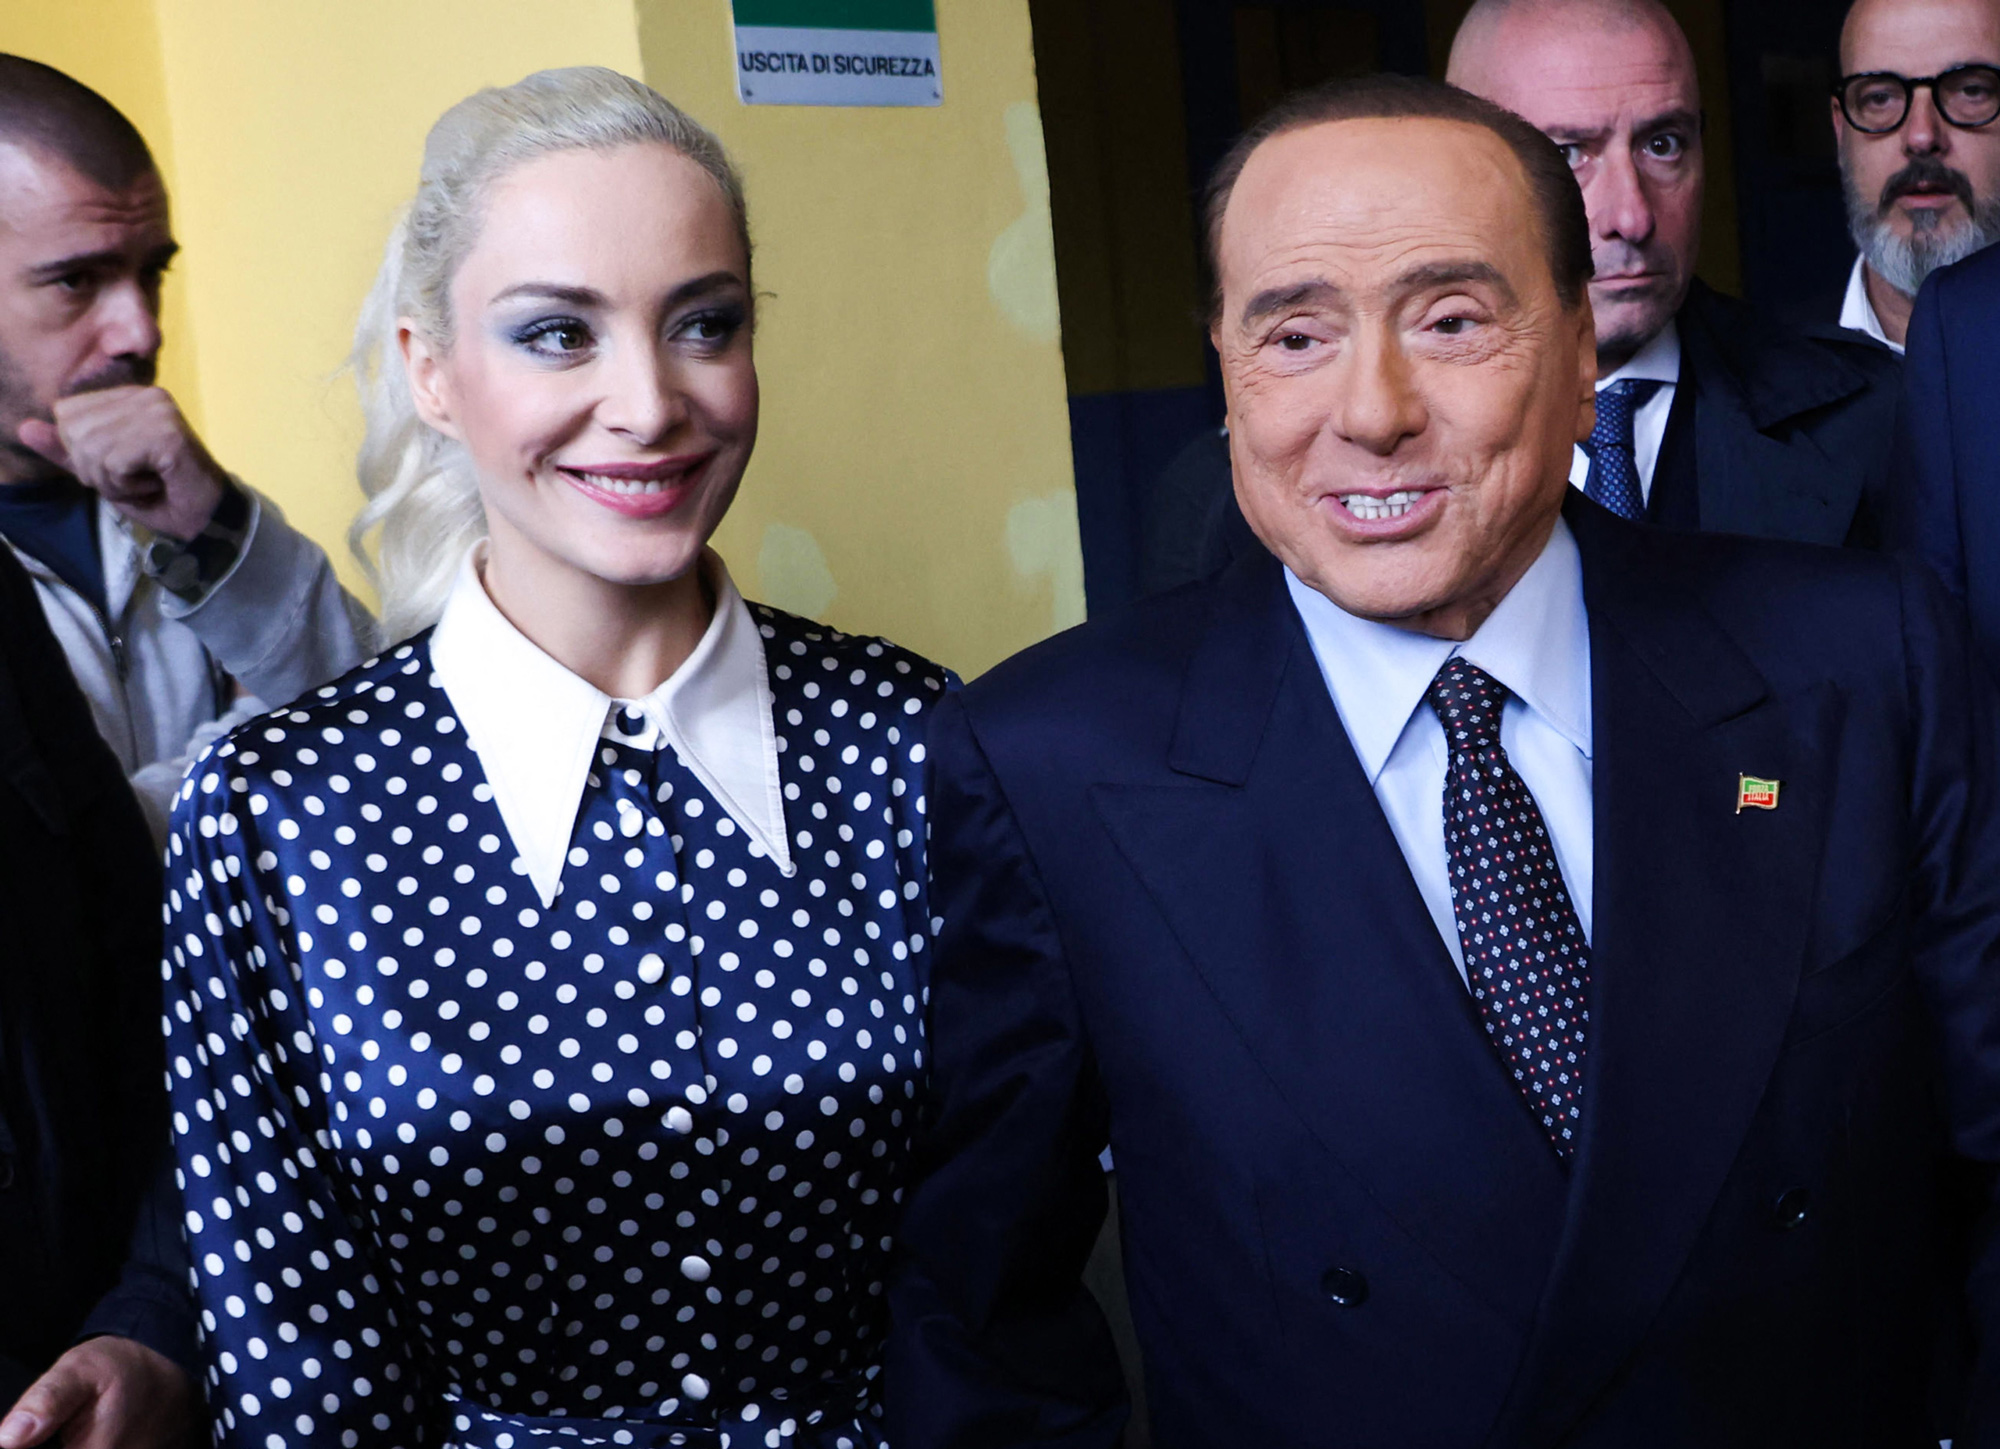 Silvio Berlusconi and his partner Marta Fascina in 2022.